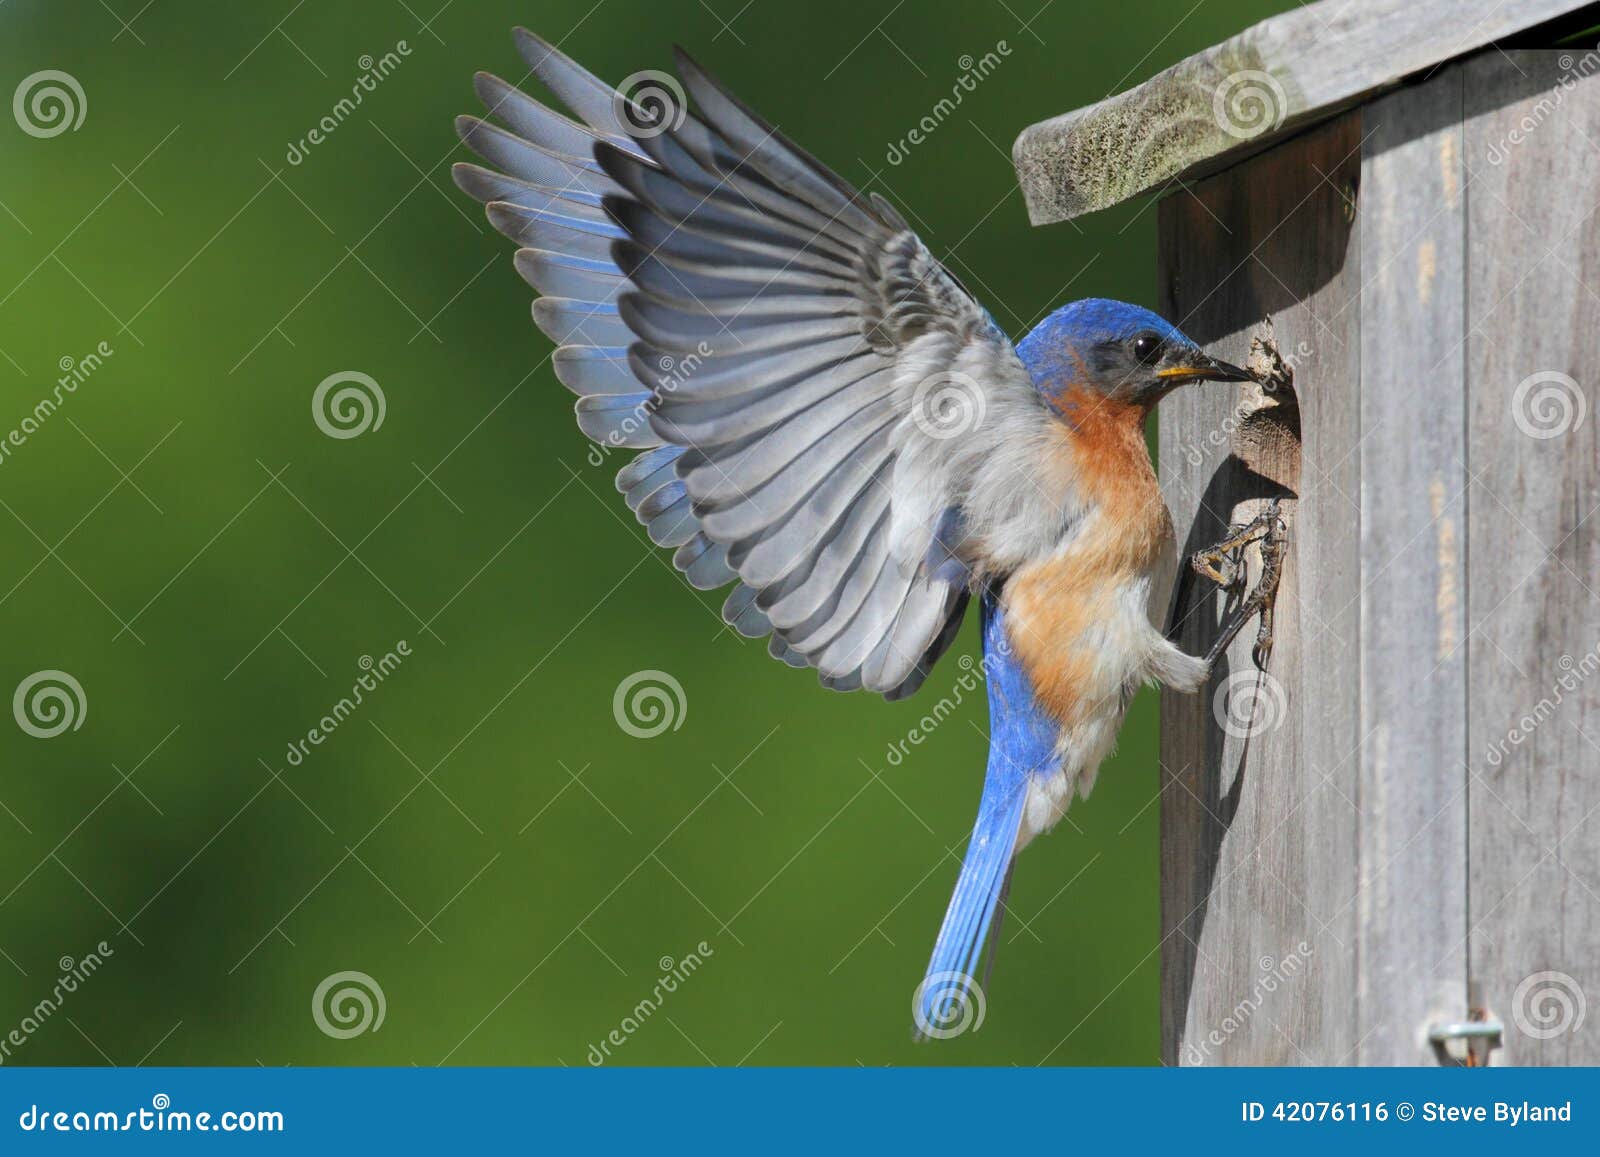 male eastern bluebird